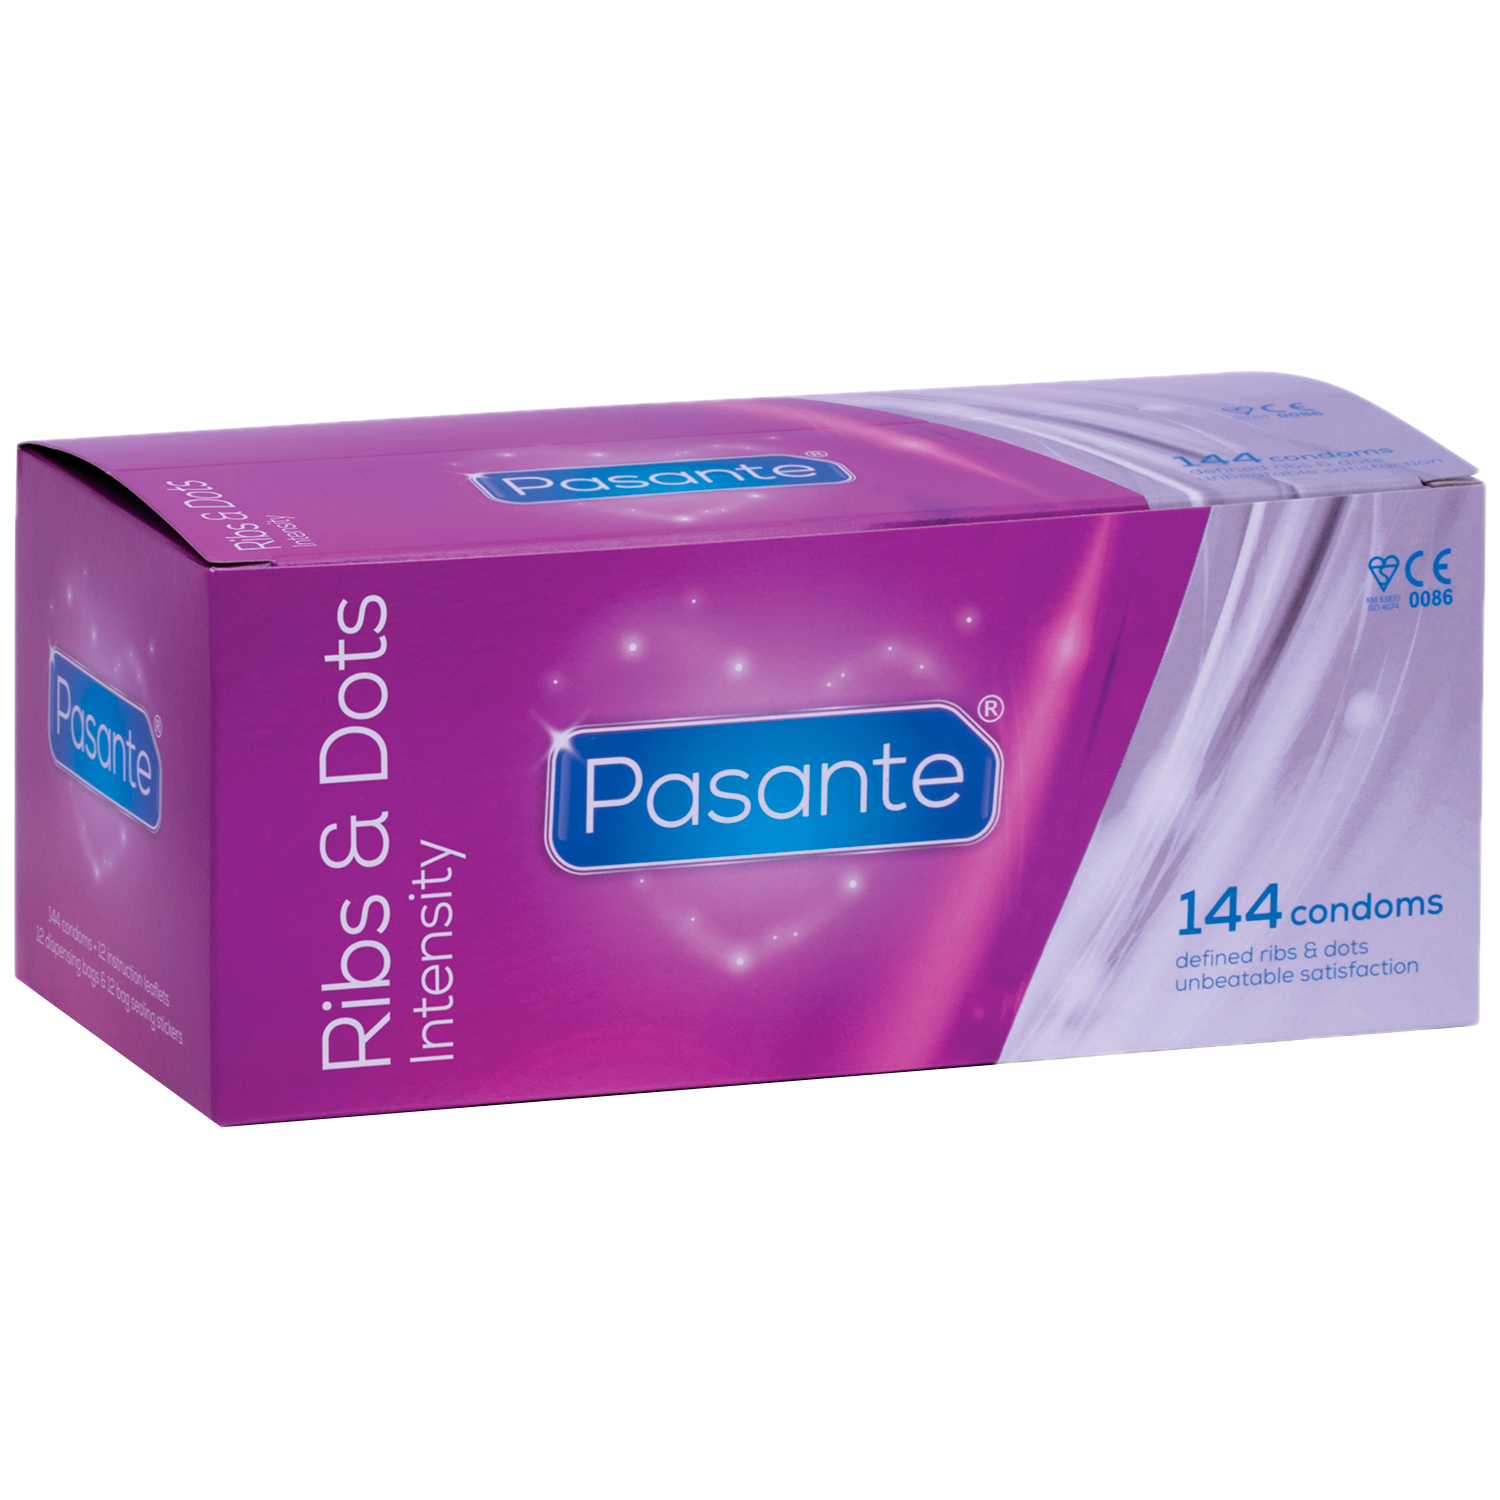 Pasante Intensity Ribs & Dots Kondomer 144 st - Pasante